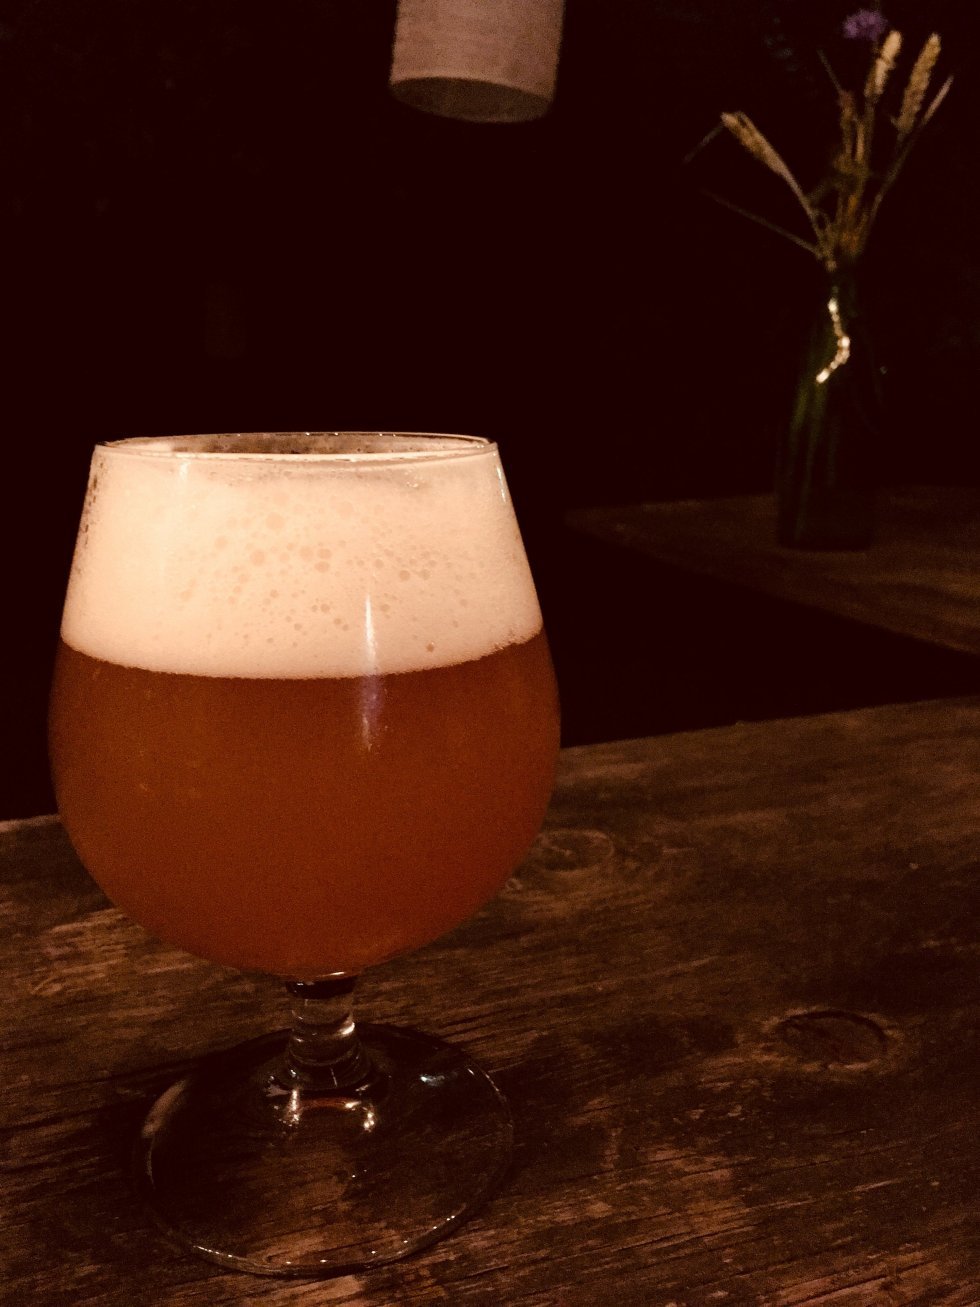 Årets Roskilde-øl er klar: Jacobsen Orange 18